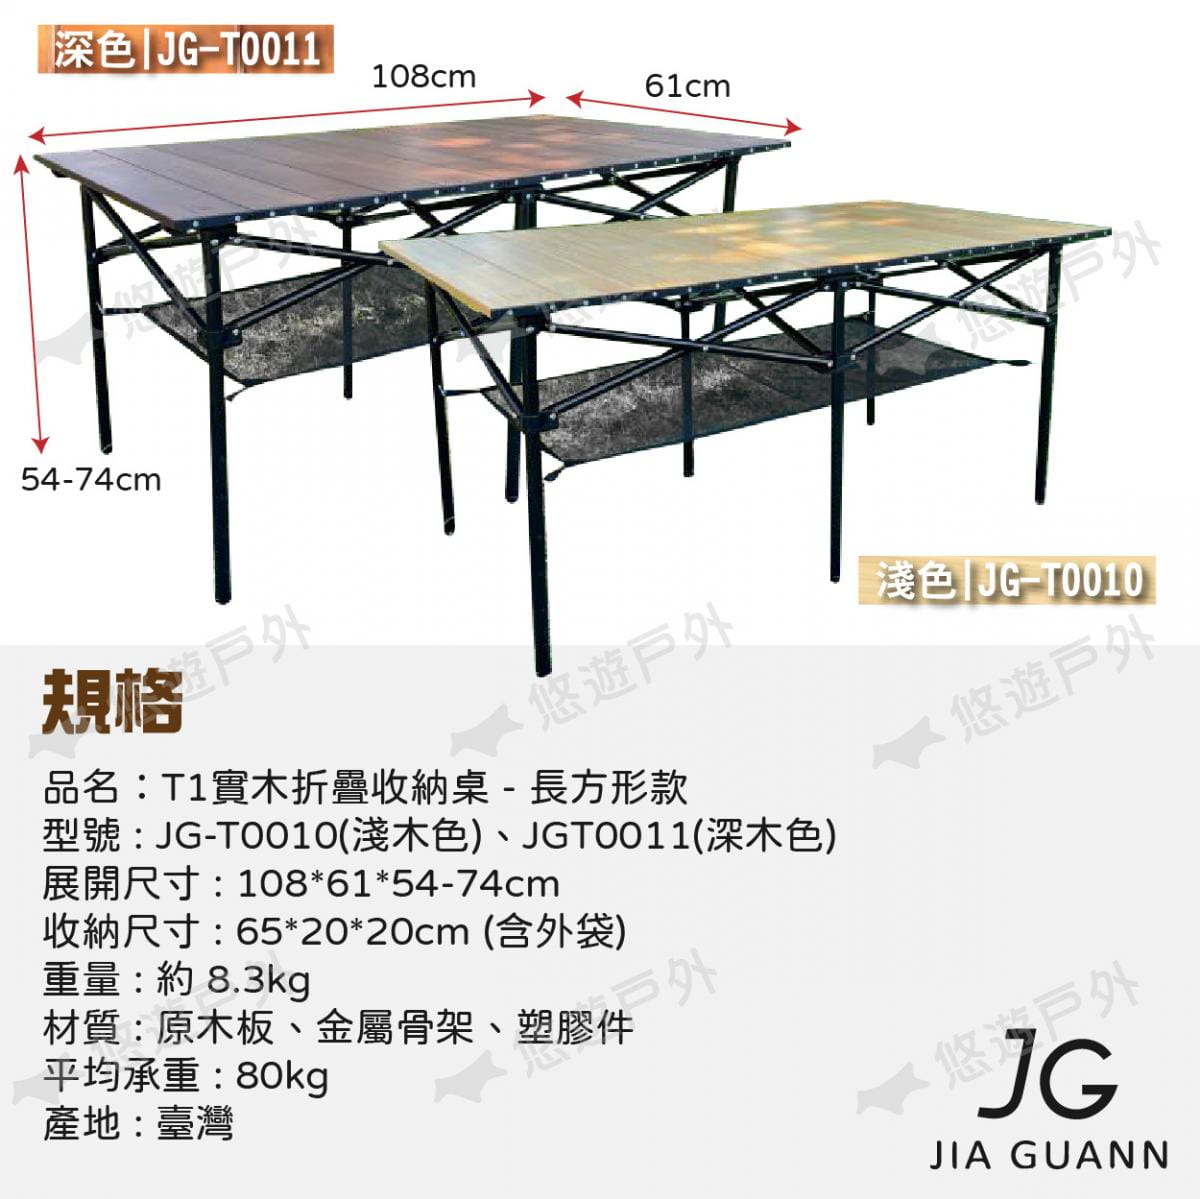 【JG Outdoor】T1實木折疊收納桌-長方形款 淺色 JG-T0010 悠遊戶外 8